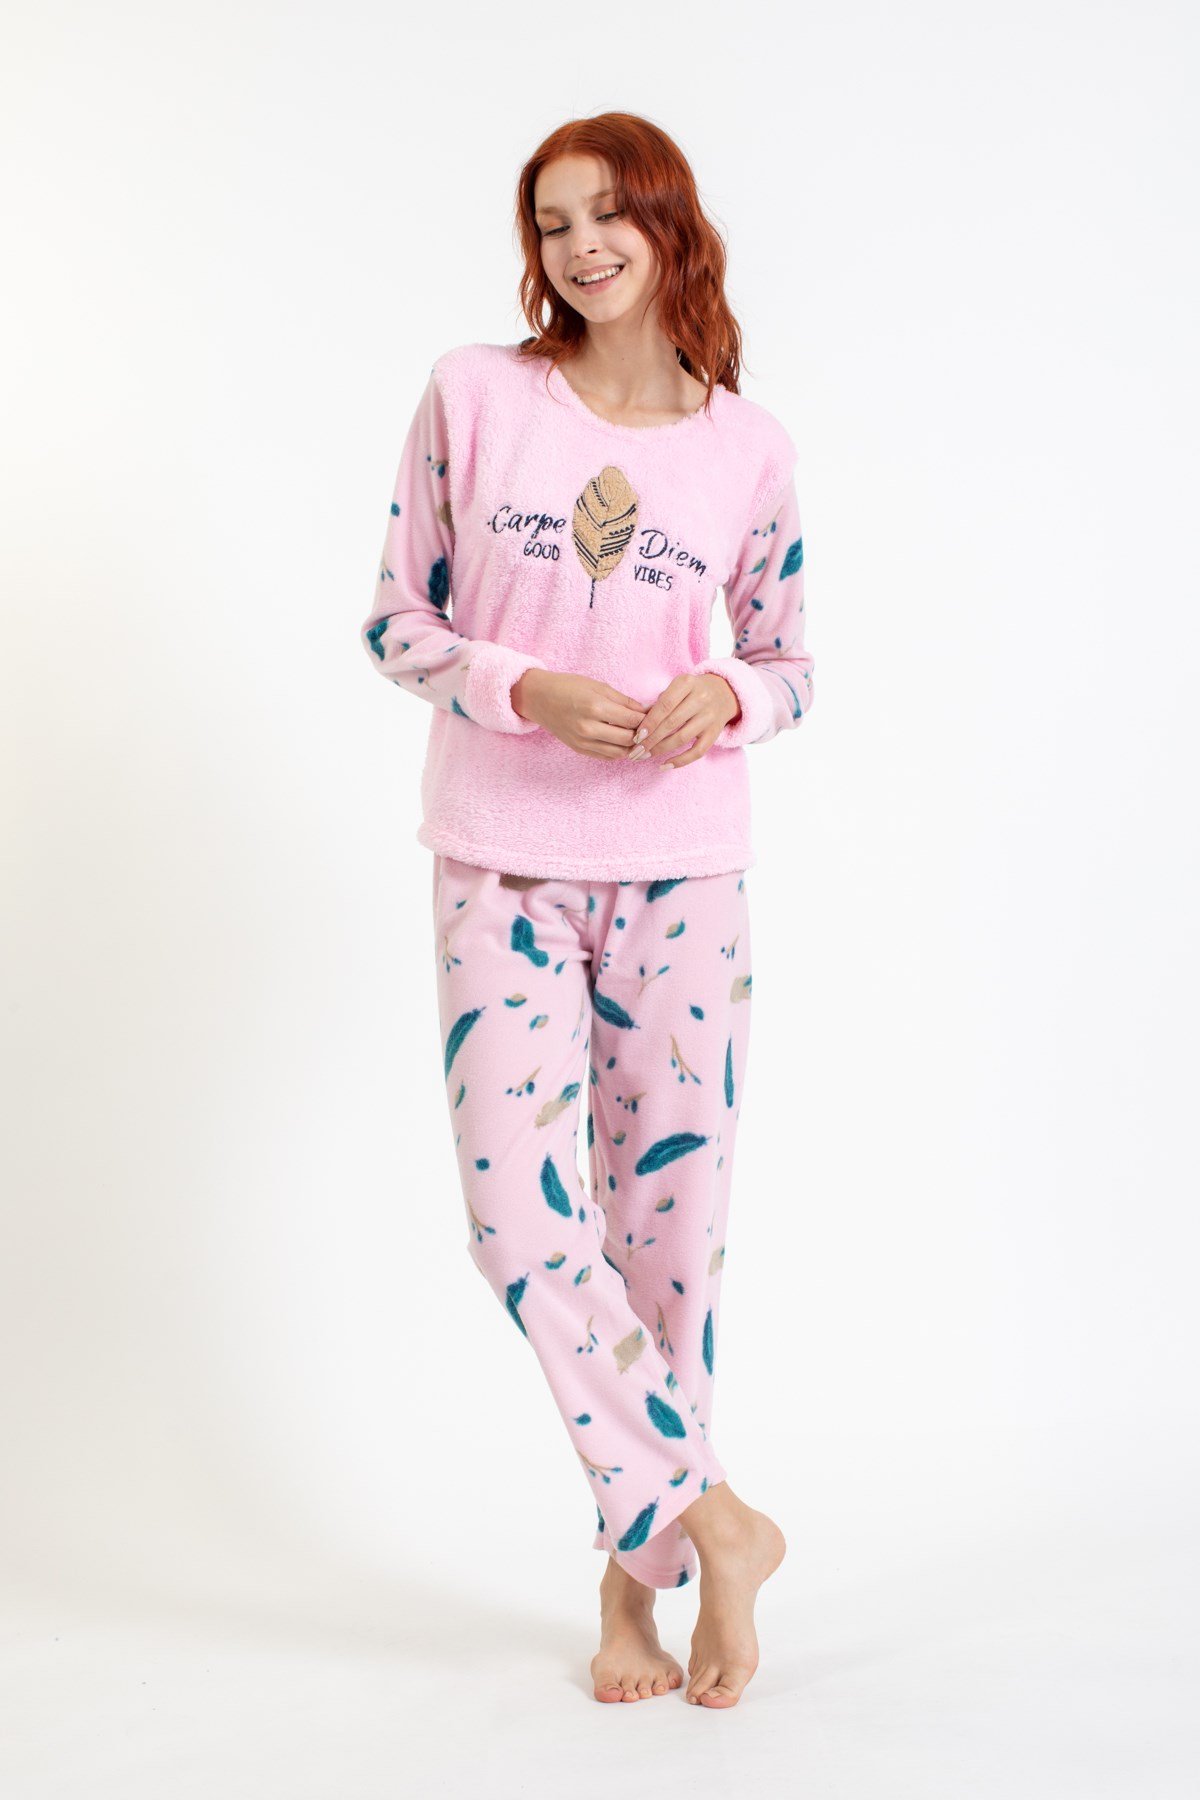 Kadın 4123 Tüy Desenli Polar Pijama Takımı PEMBE